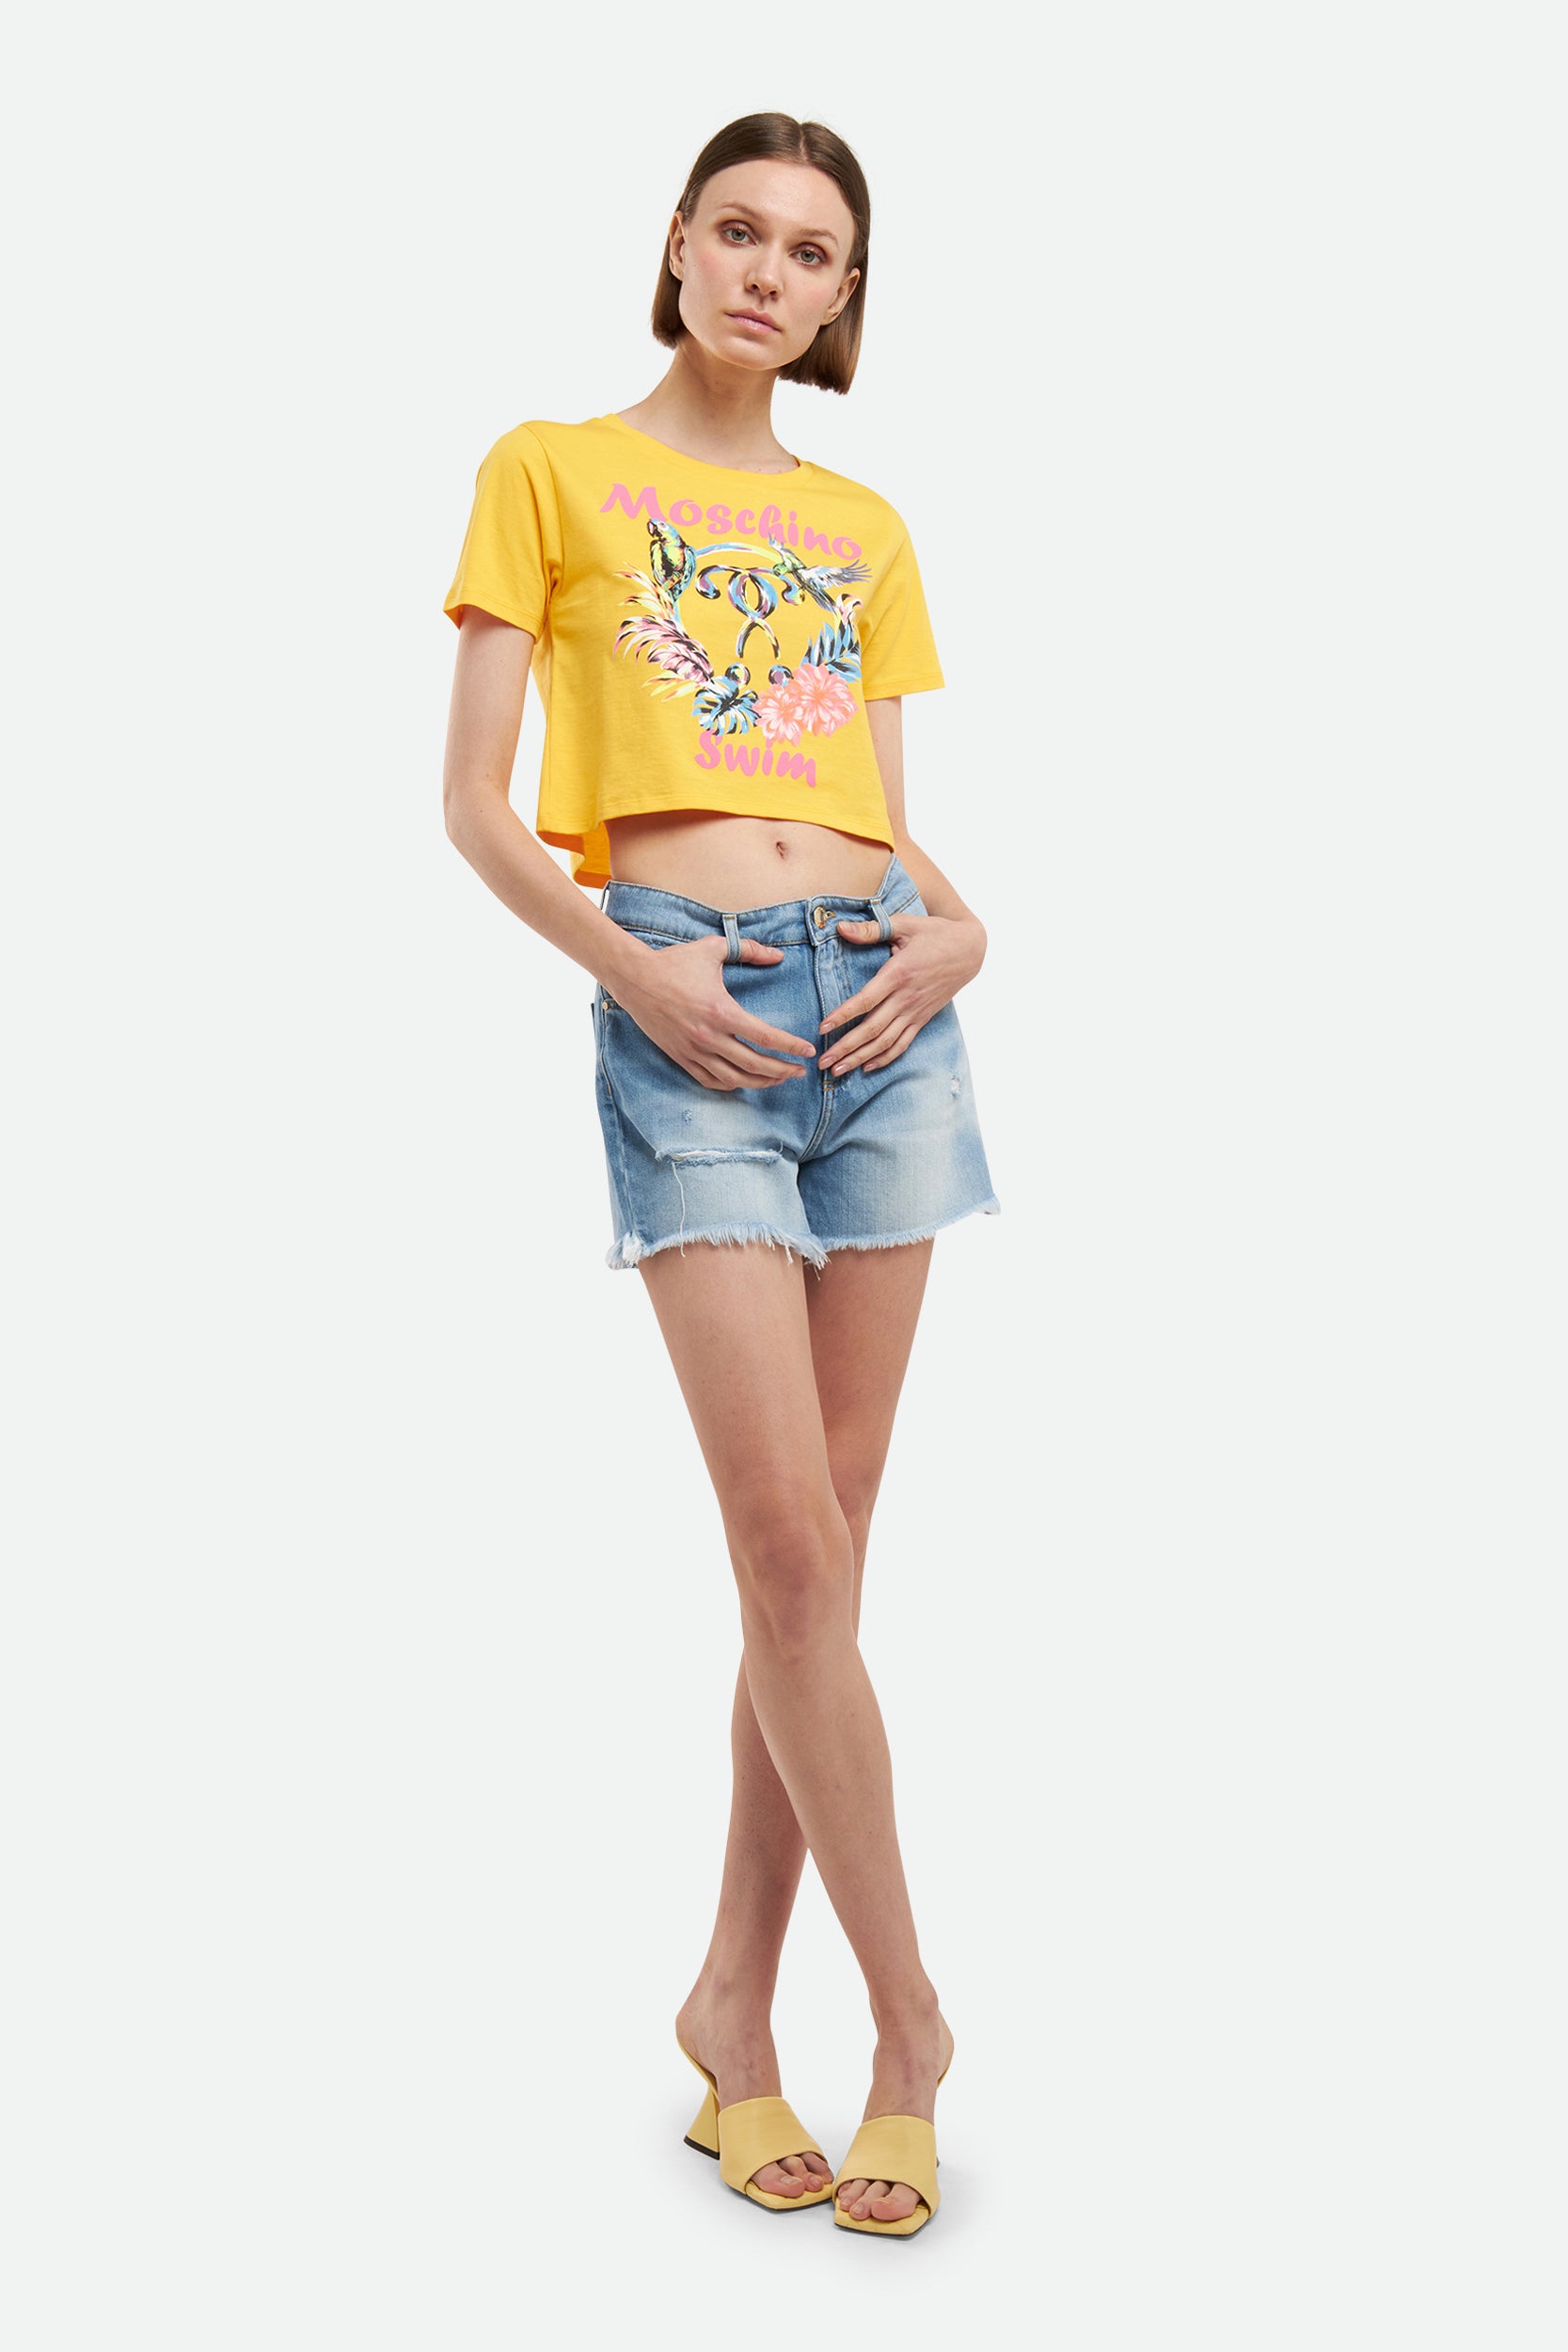 Moschino Yellow T-Shirt